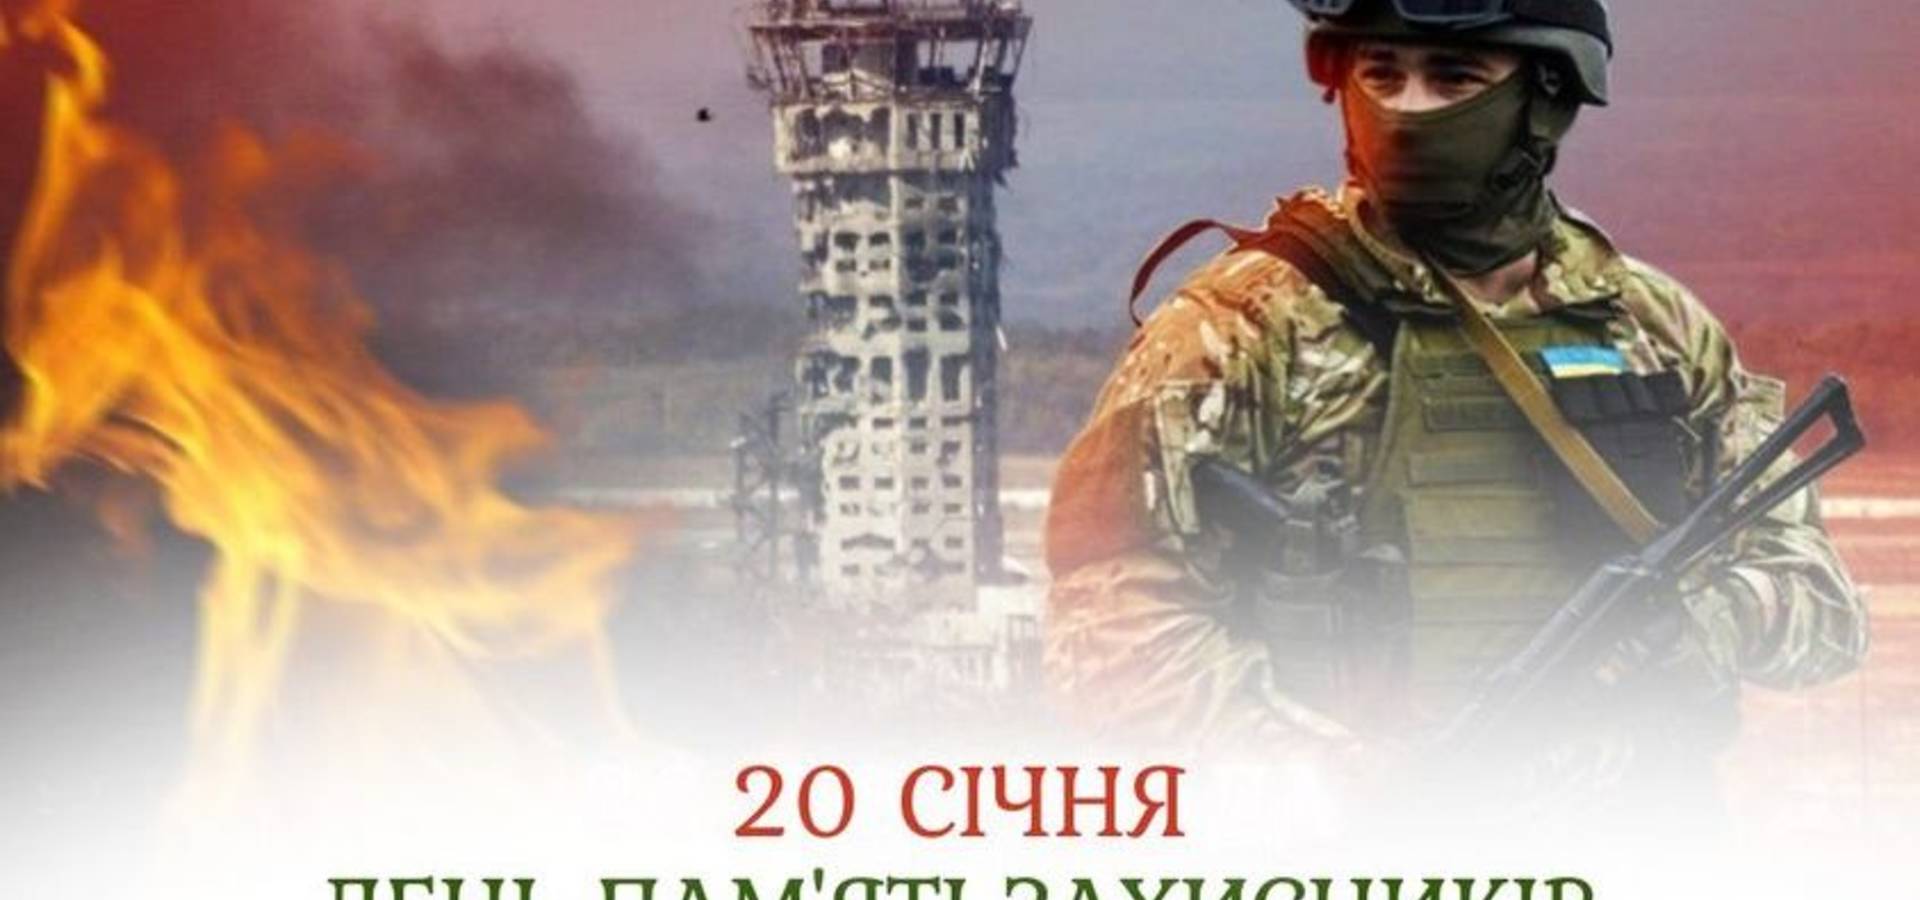 Сьогодні, 20 січня, в Україні на офіційному рівні відзначається День пам’яті Захисників Донецького аеропорту